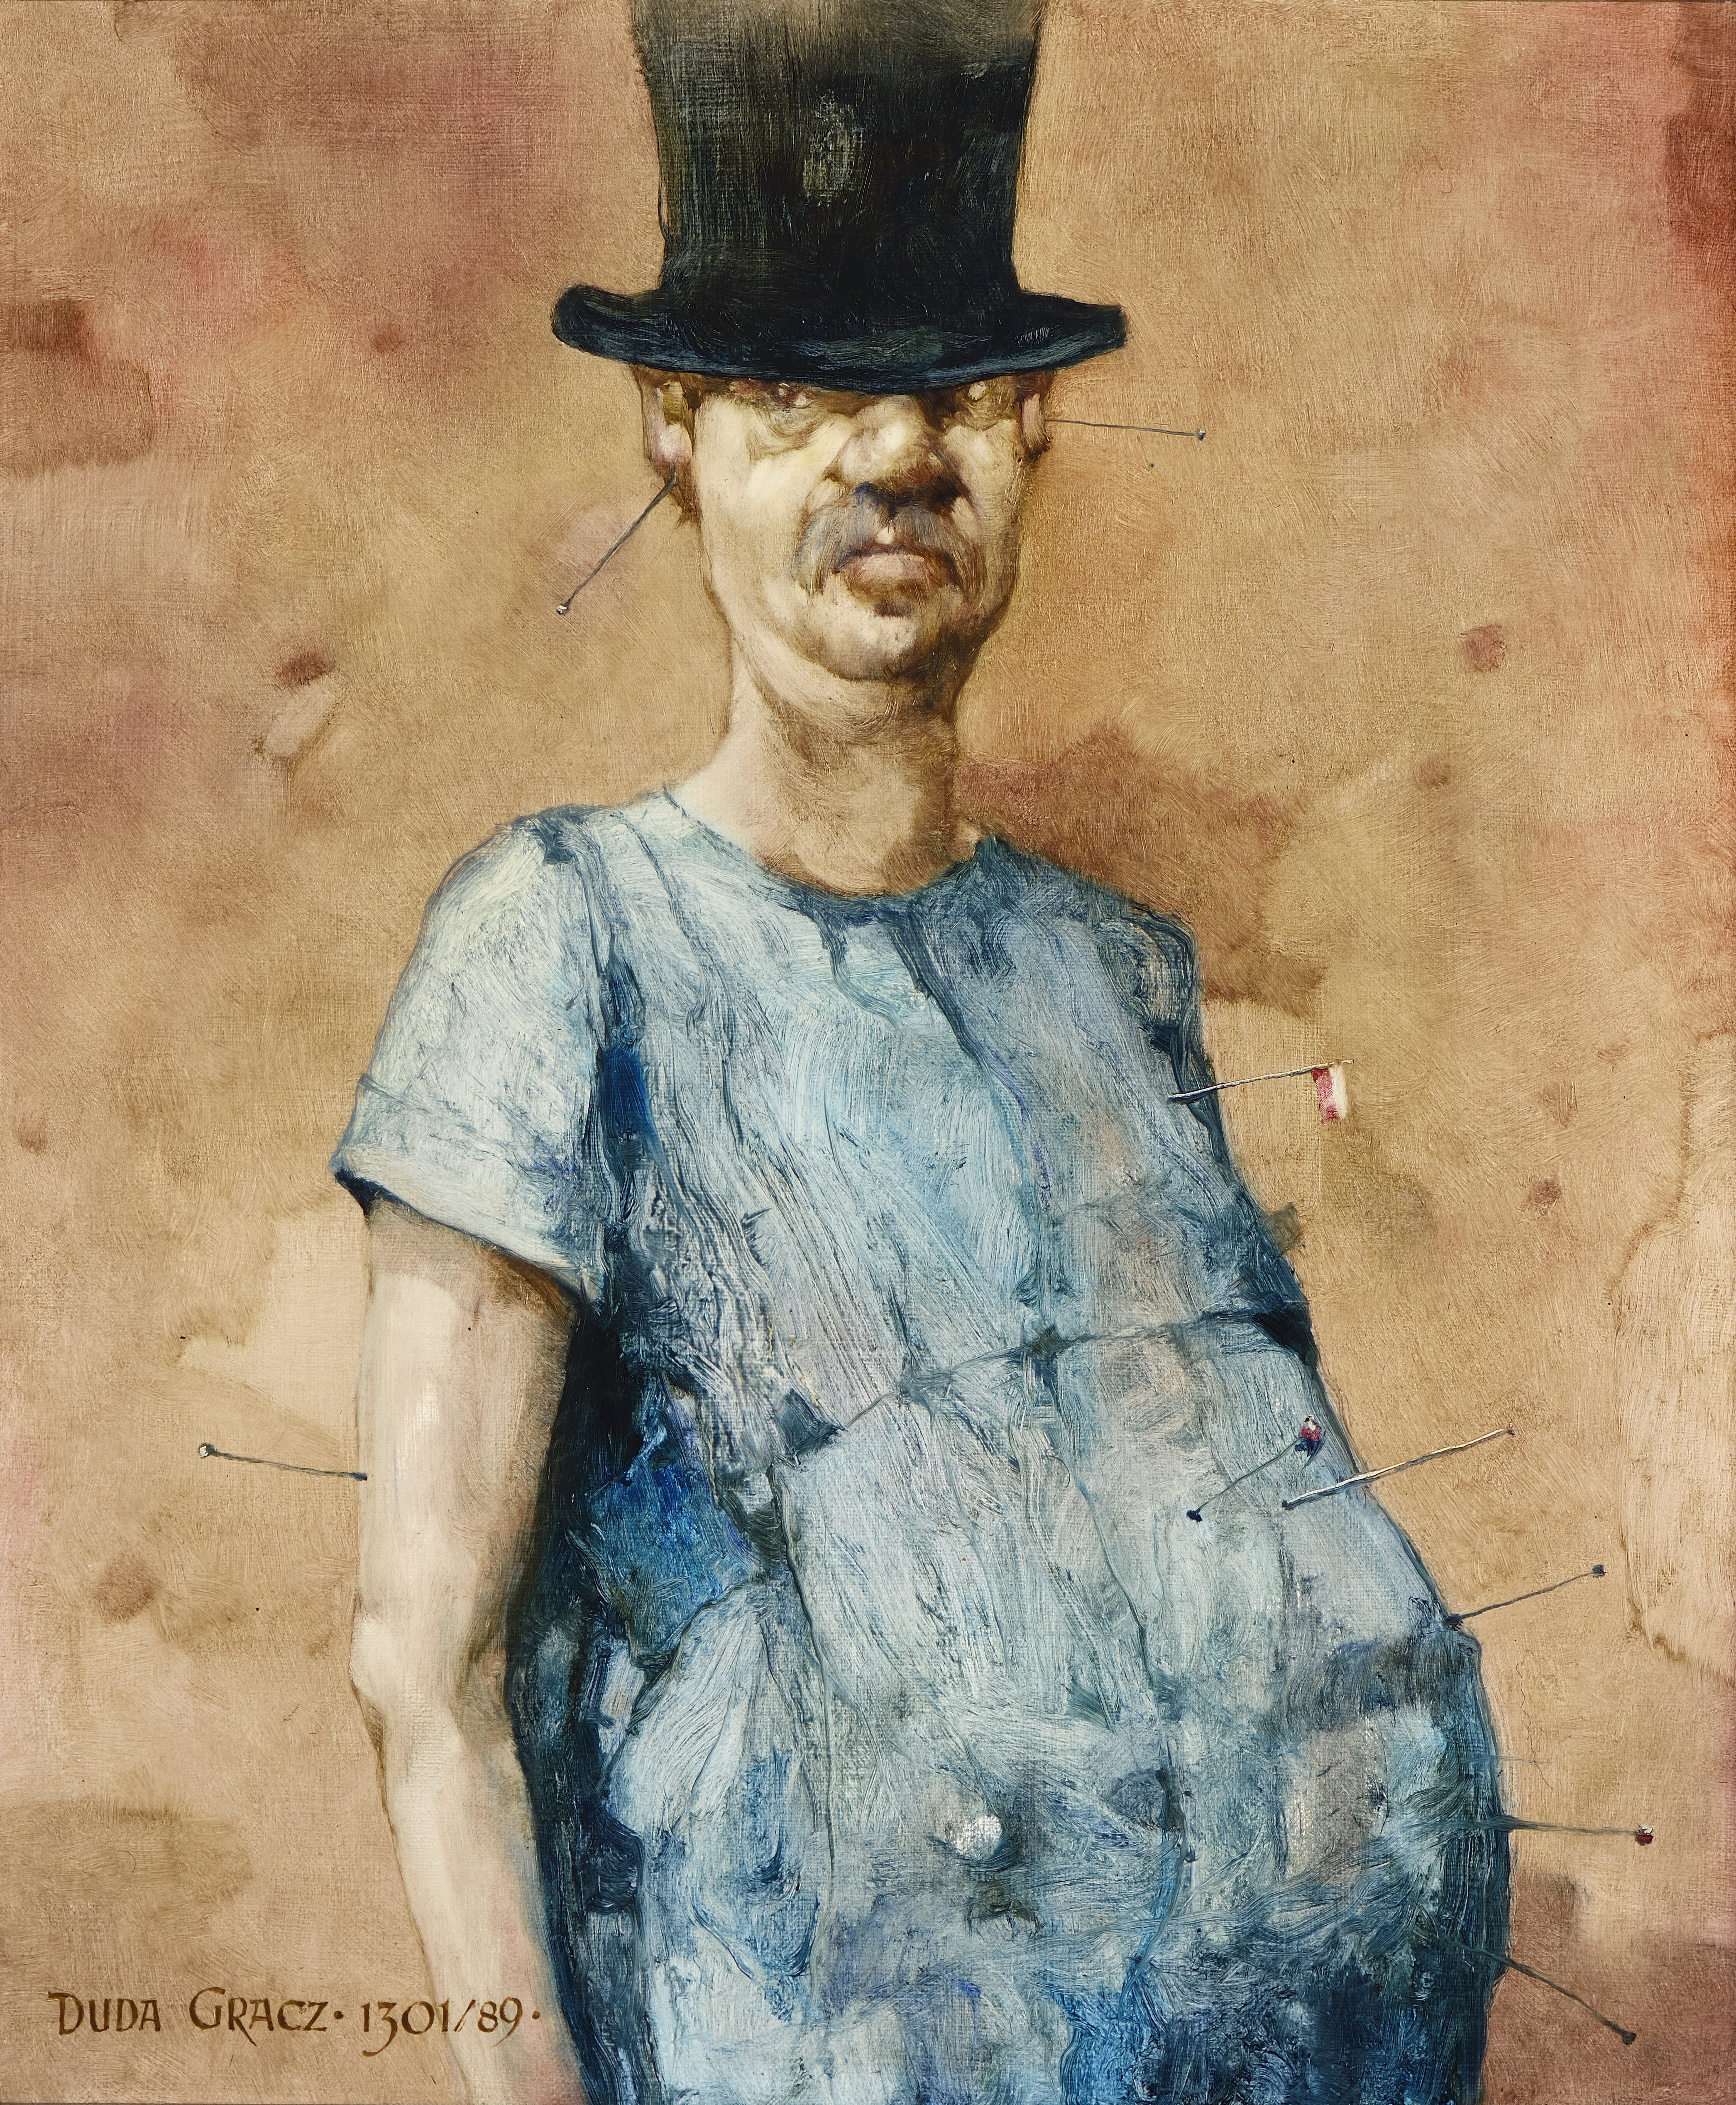 Obraz 1301 / Autoportret / Painting 1301 / Self-Portrait, 1989, olej na płycie pilśniowej / oil on fibreboard, 54 × 65 cm